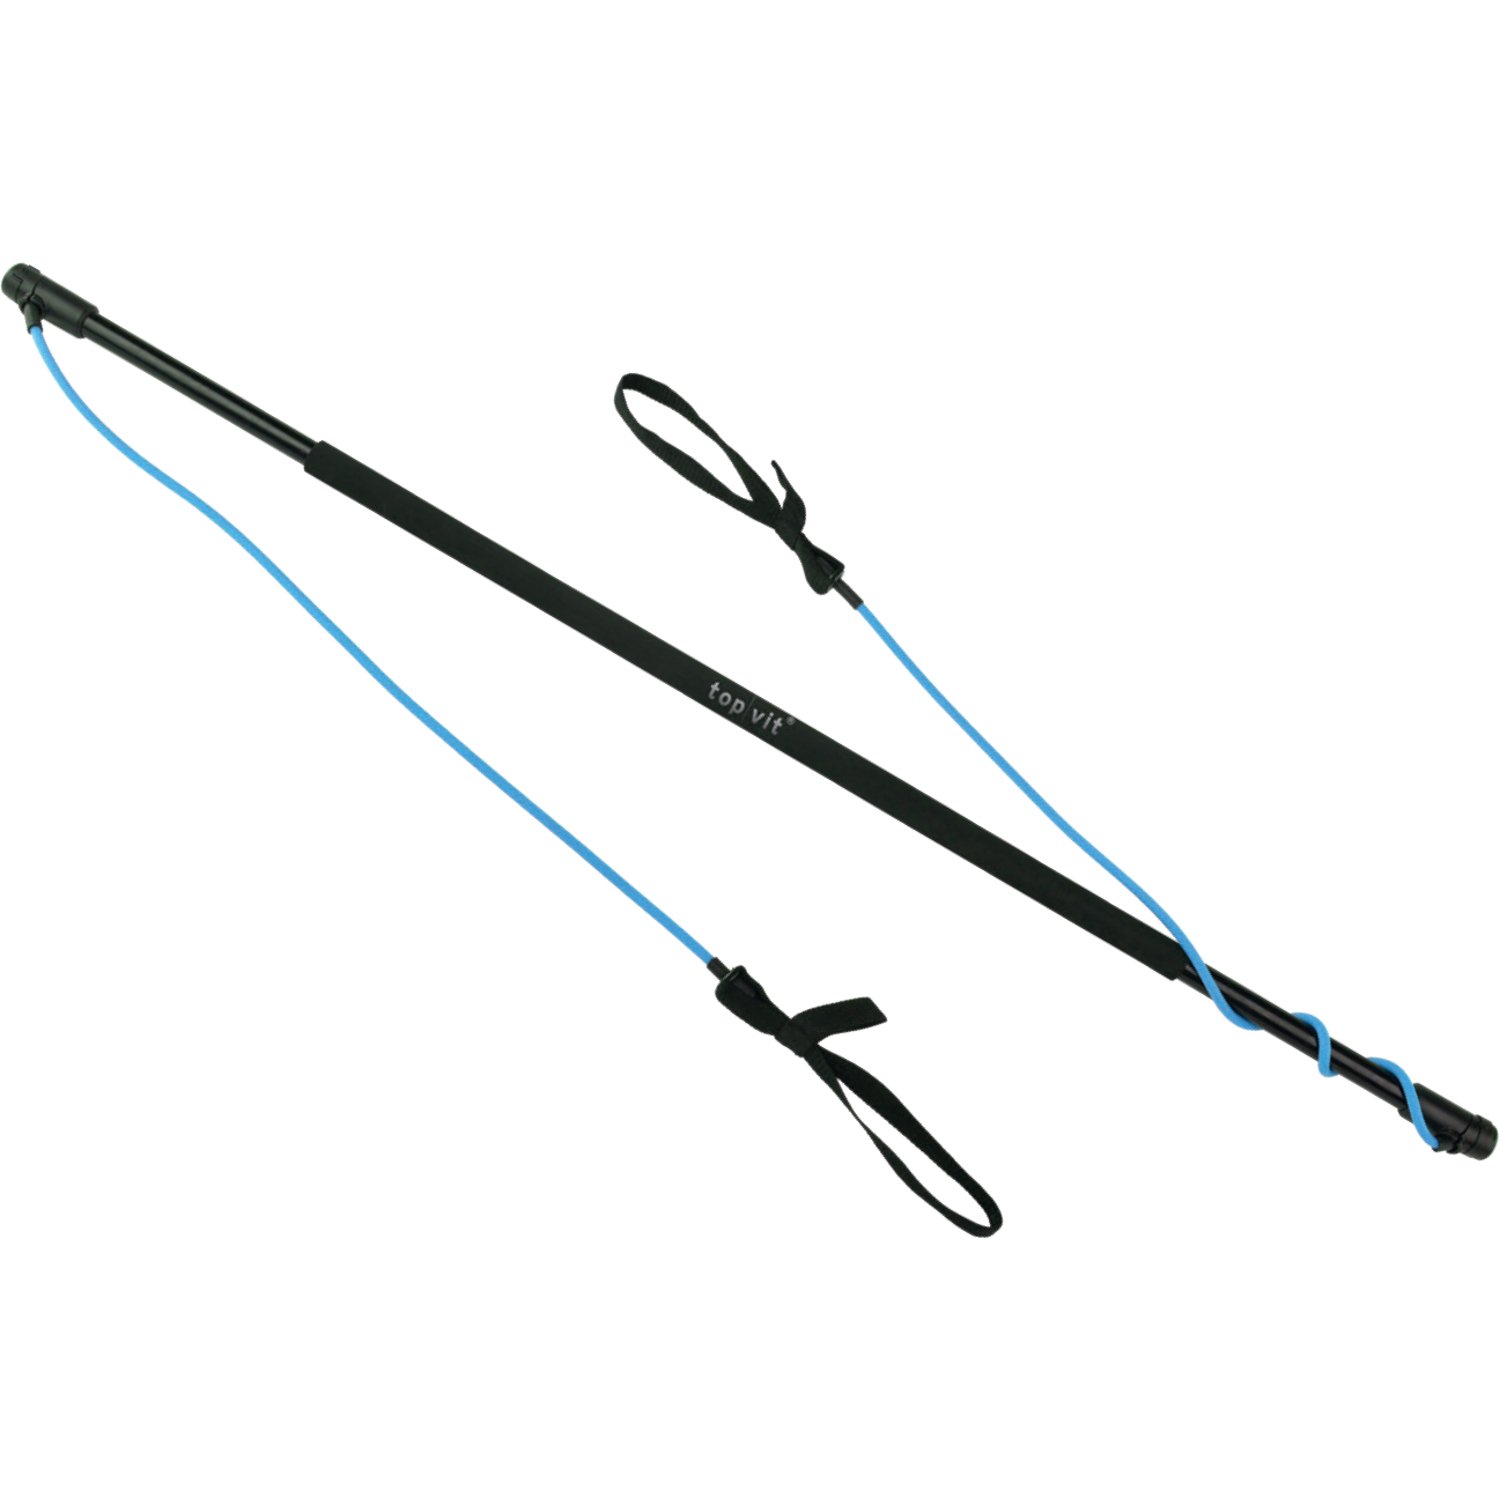 top vit Physio.Stick, Gymnastikstab mit Gummibänder zum Widerstandtraining mit Transporttasche (02: blau - mittel (1-20 kg))